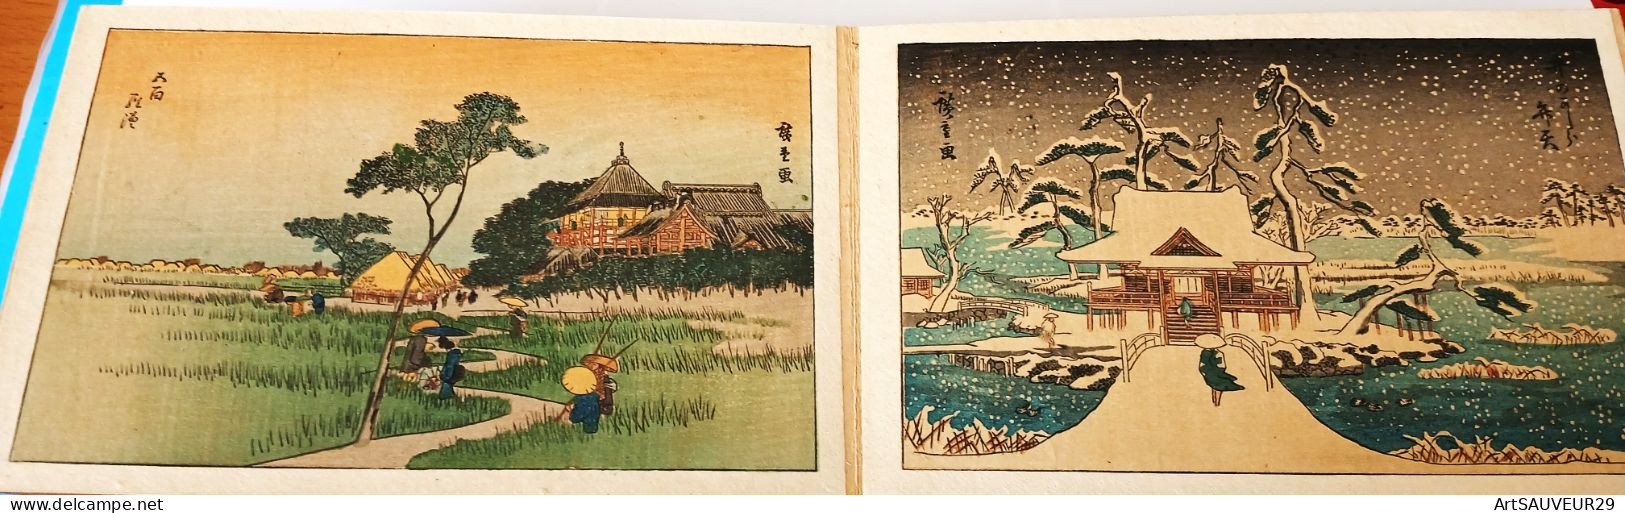 HIROSHIGE  Carnet d'estampes (15x10 cm) au nombre de 12 datées de 1857 (avant sa mort)  Tokyo Tanseido Sorow  sur suppor